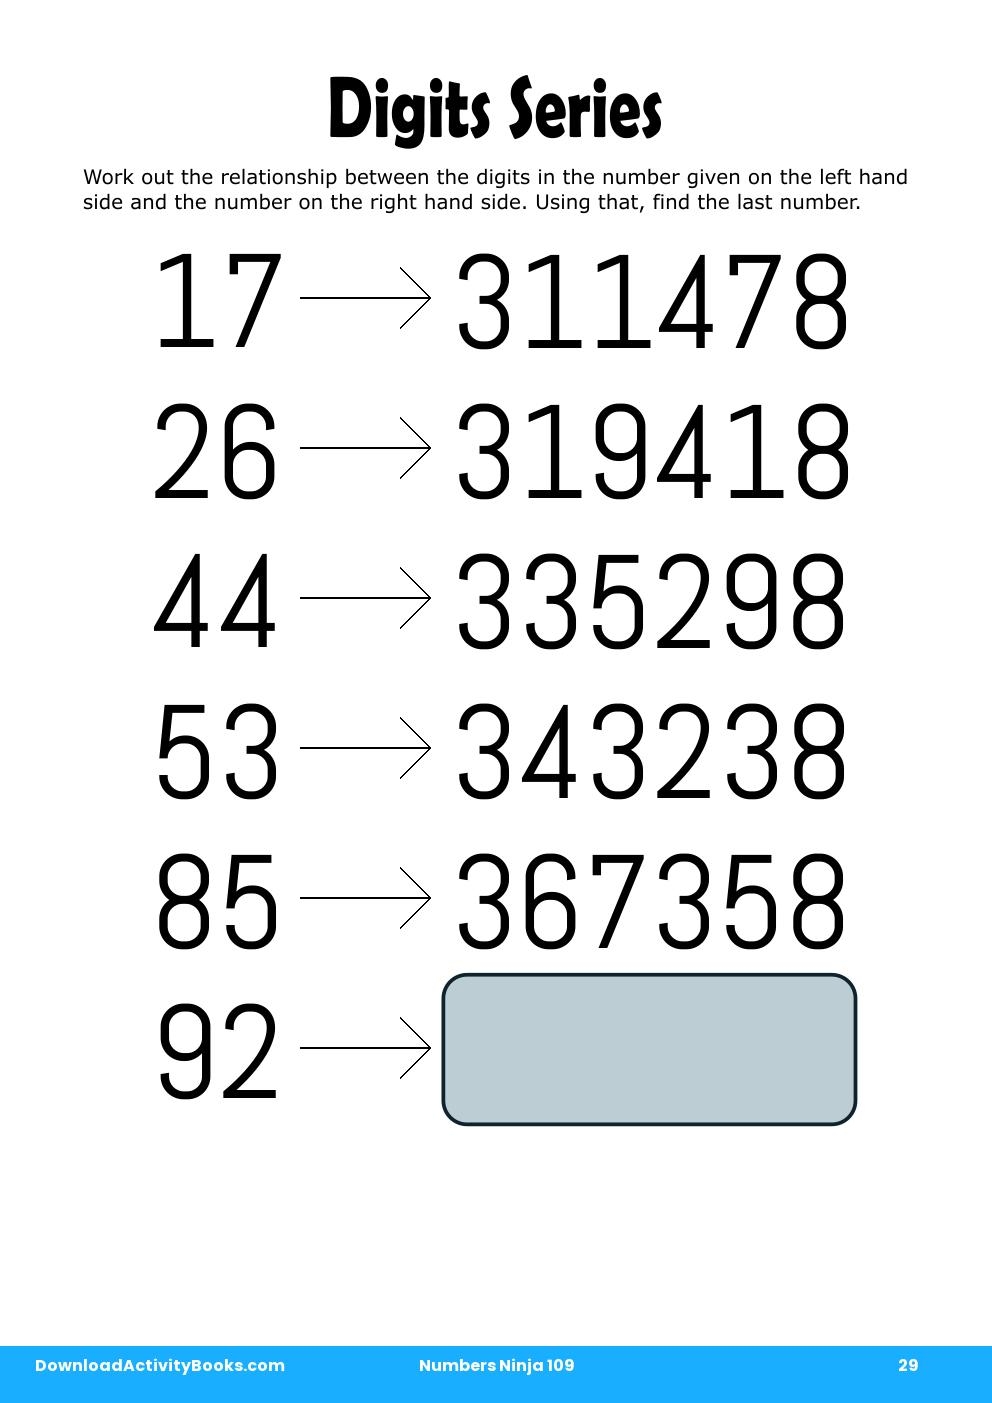 Digits Series in Numbers Ninja 109